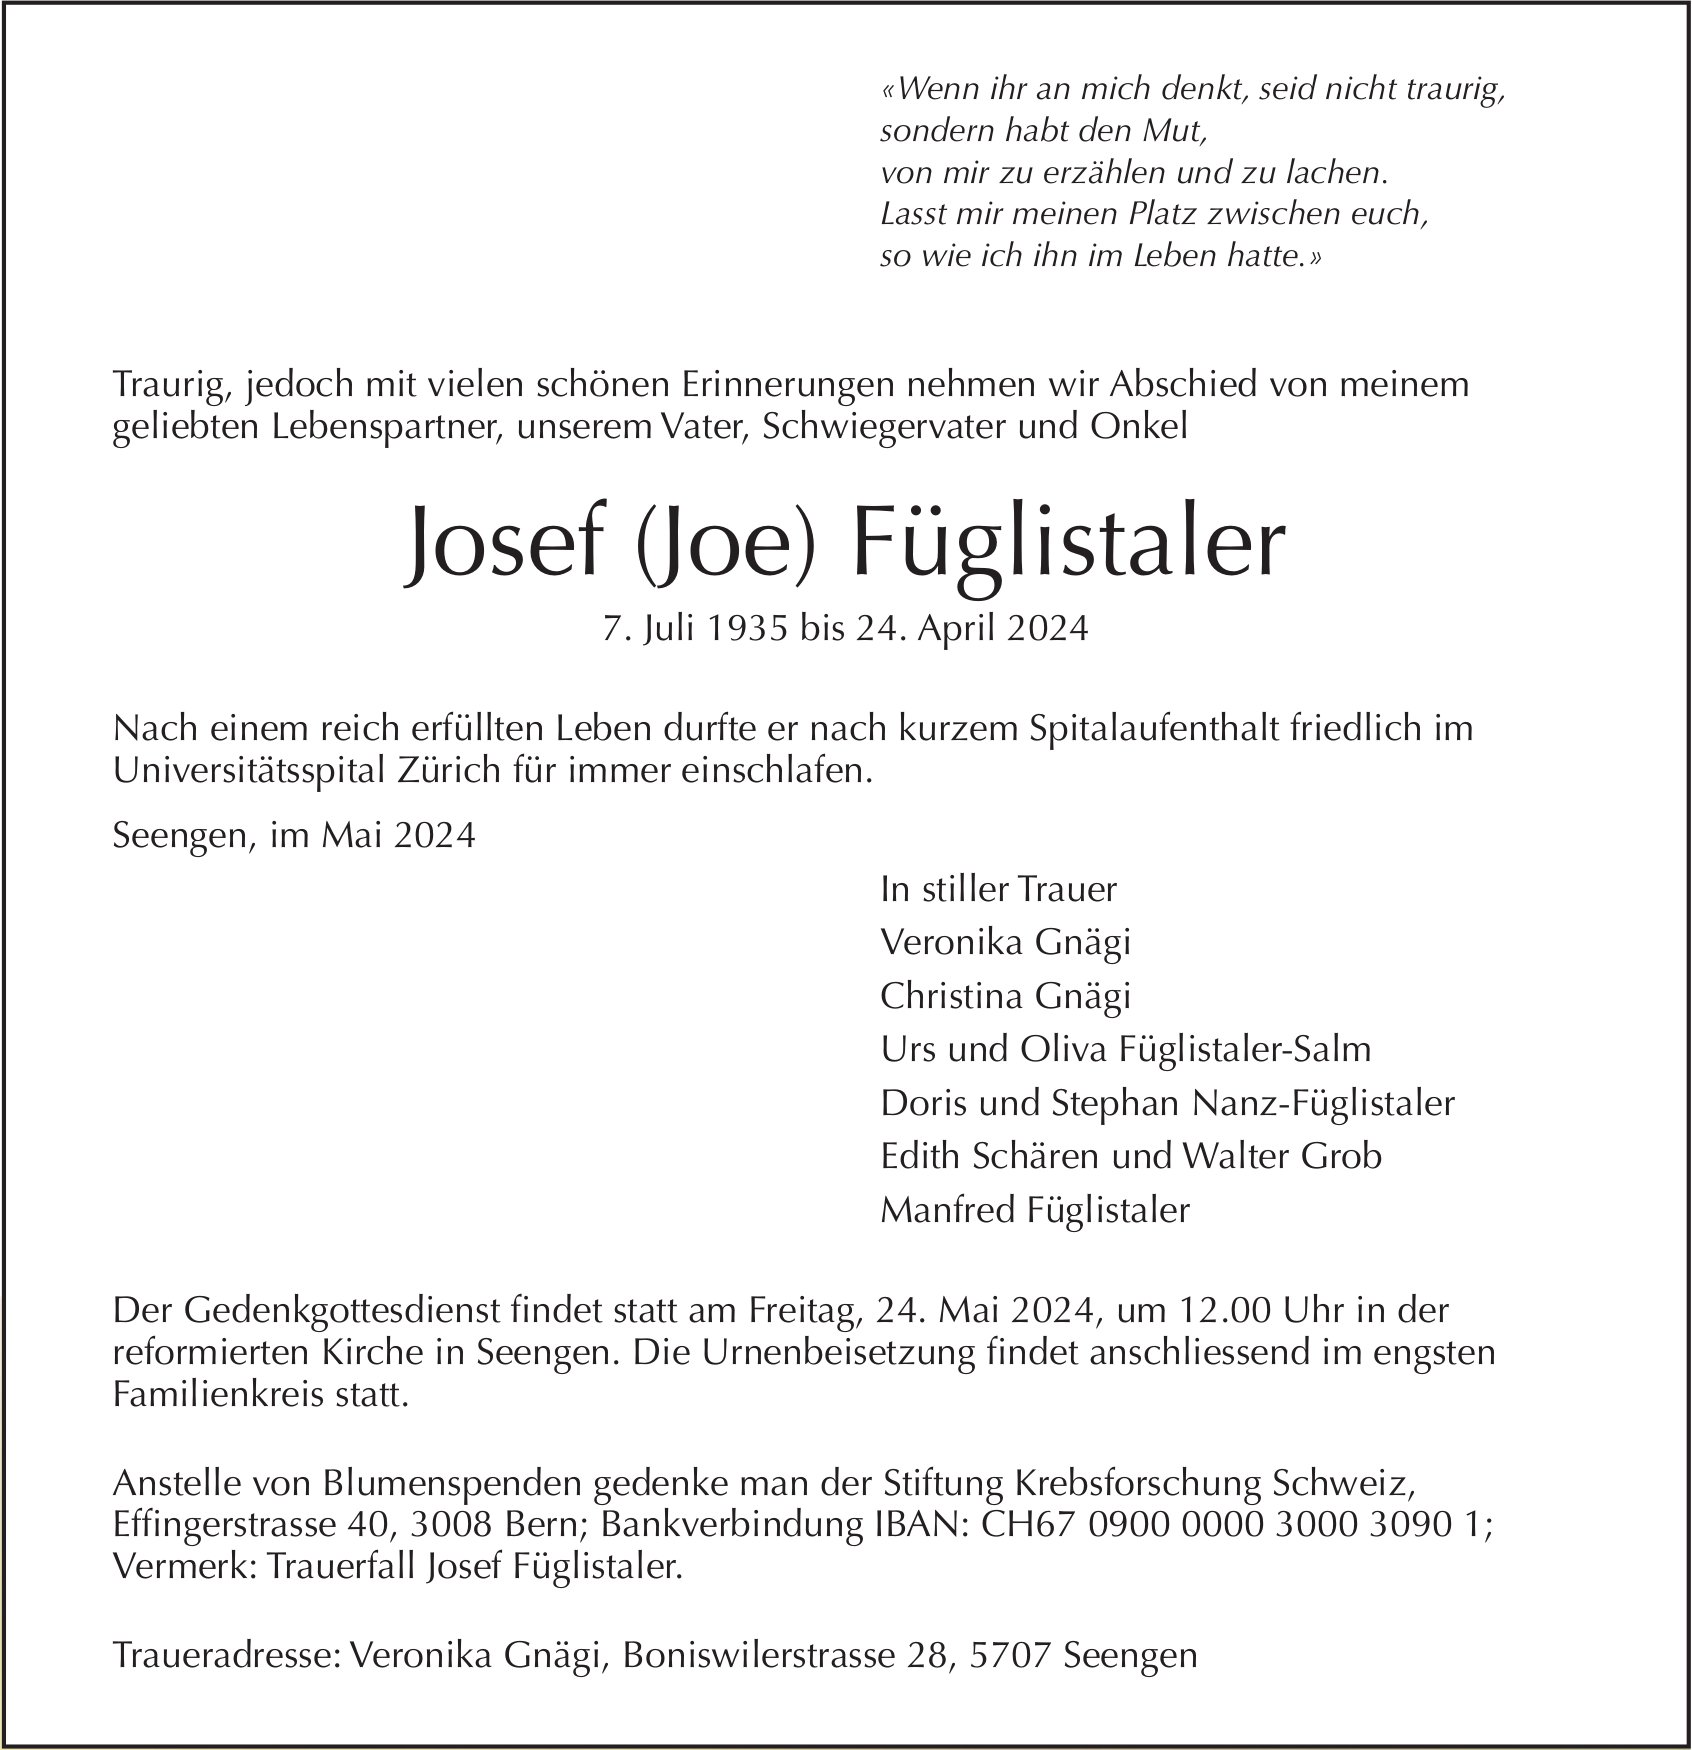 Josef (Joe) Füglistaler, April 2024 / TA